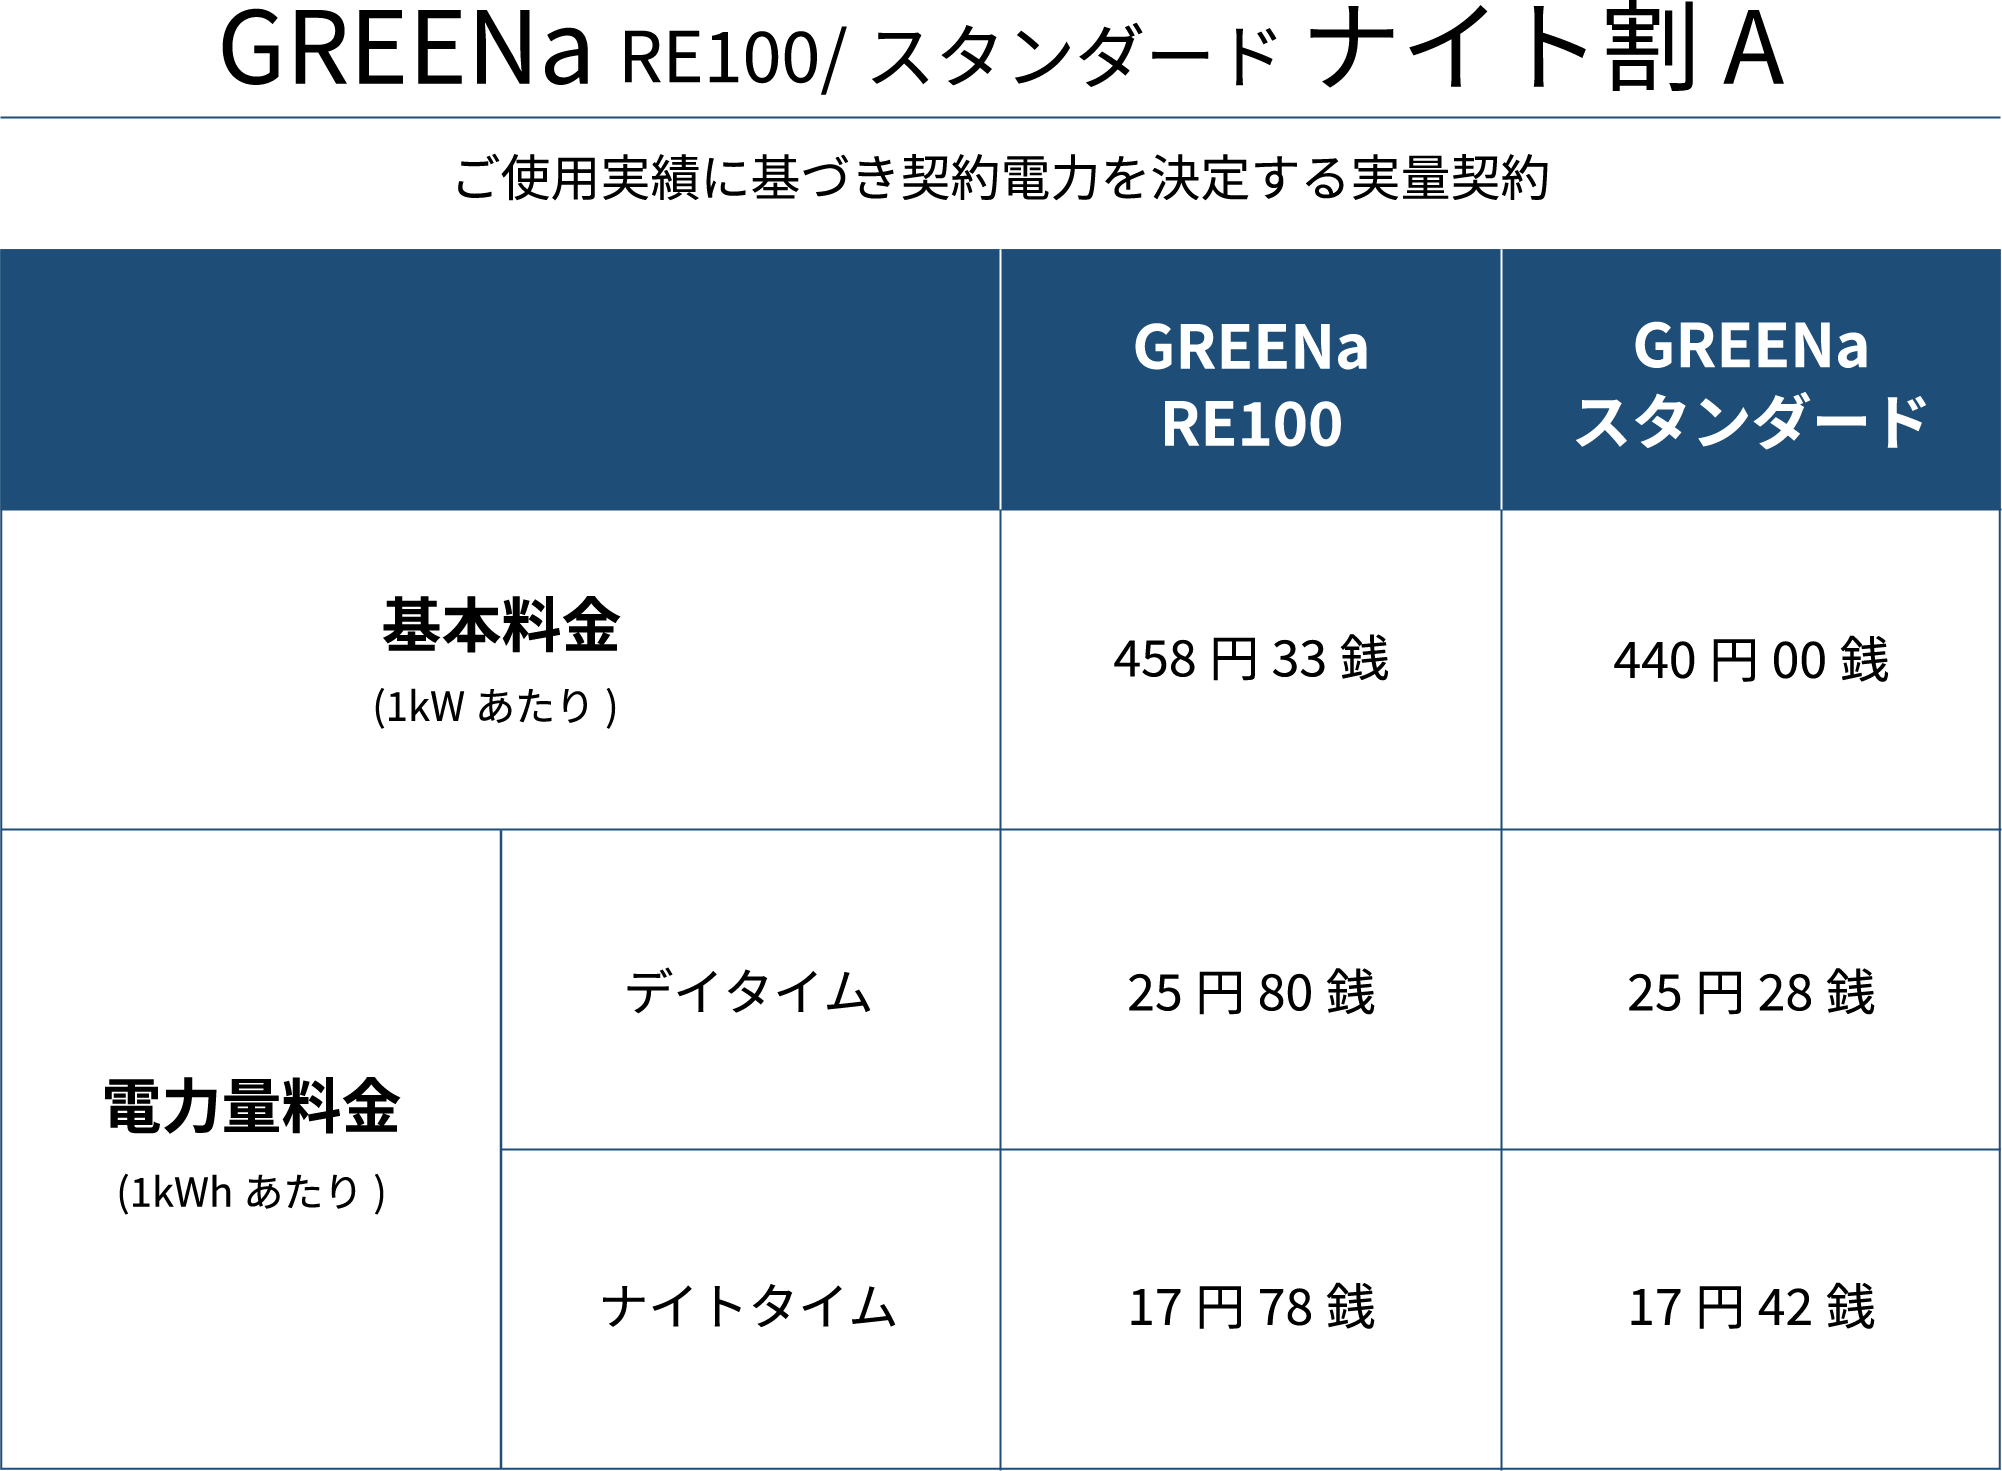 GREENa RE100/スタンダード ナイト割 A